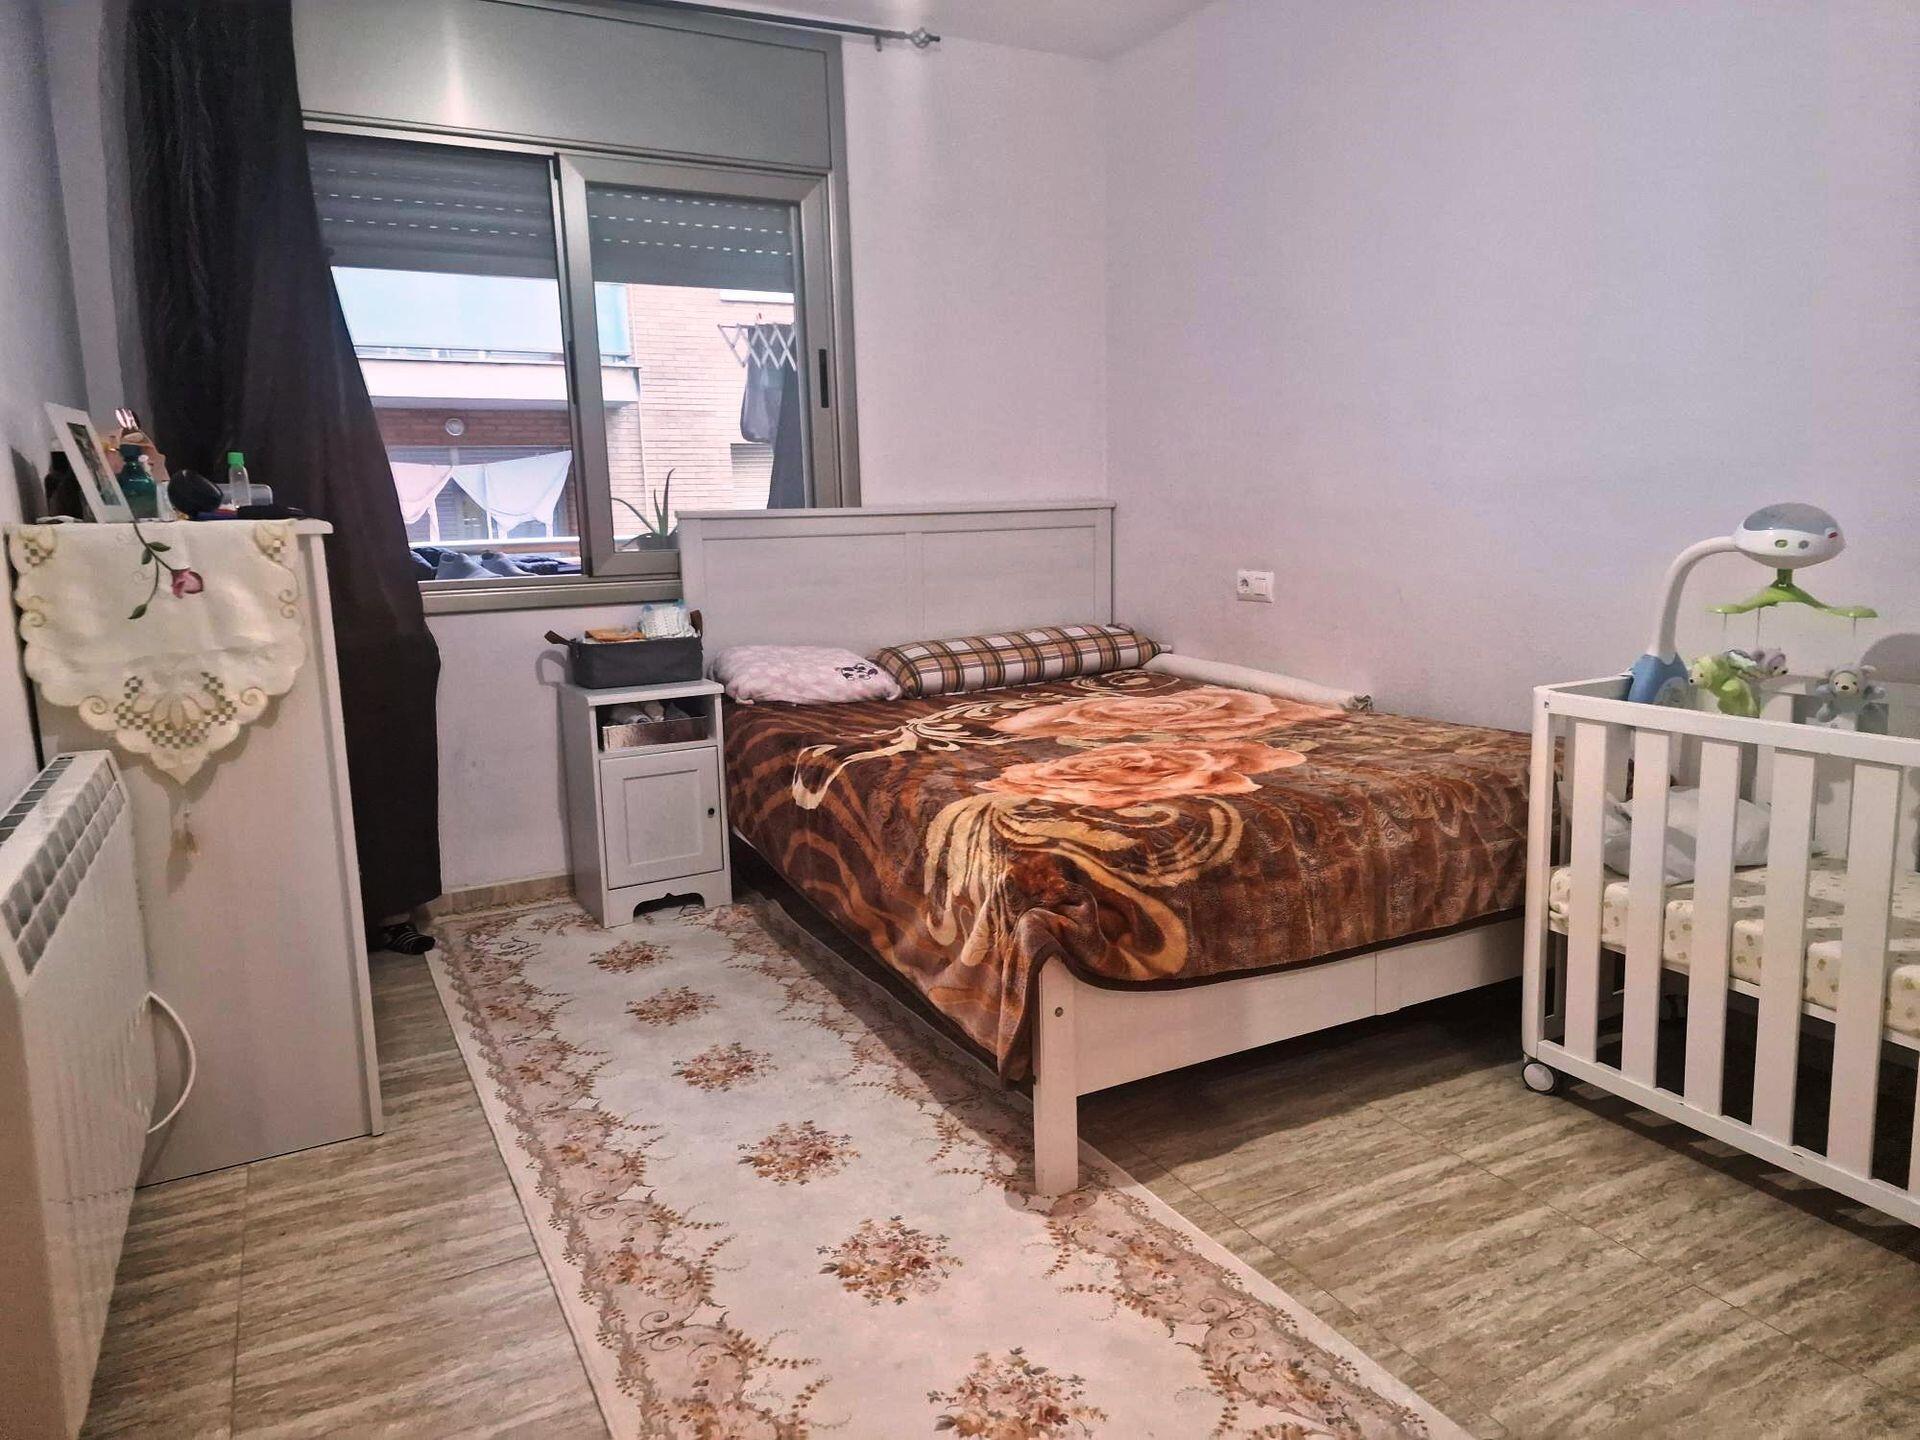 Apartament - Cambrils - 3 dormitoris - 0 ocupants